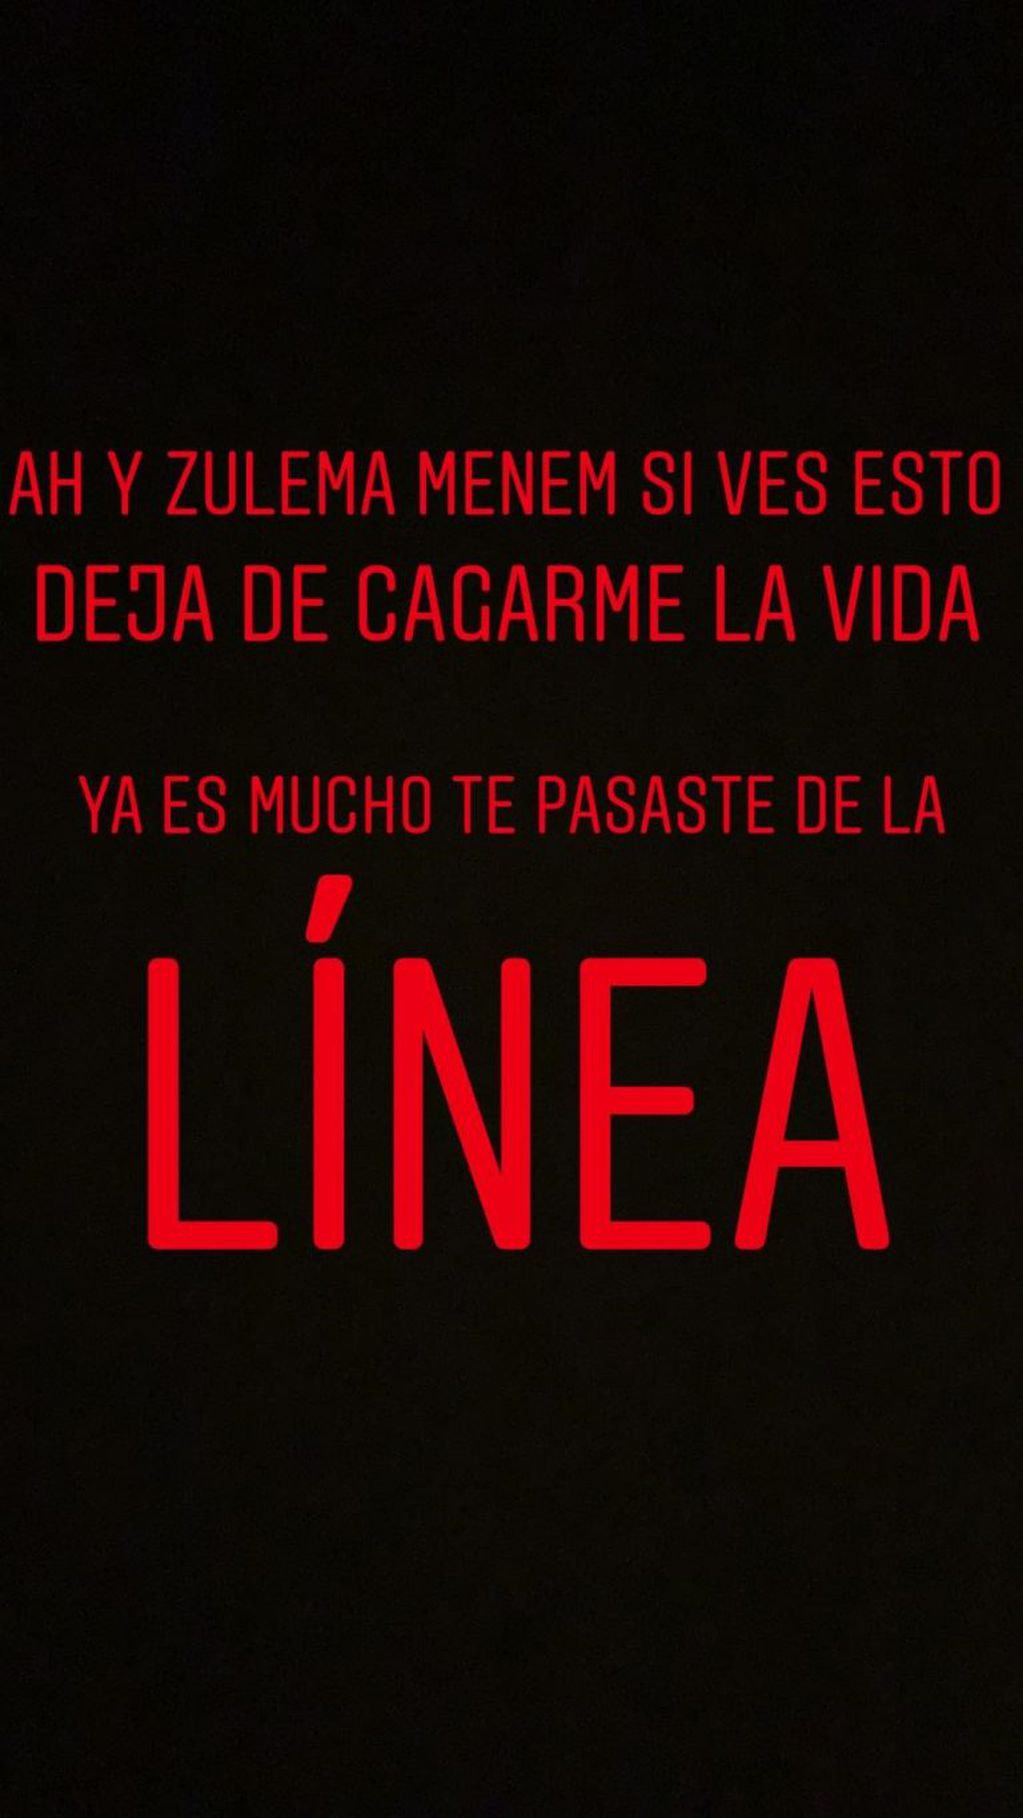 Máximo Menem le dedicó un fuerte mensaje a su hermana Zulemita en su cuenta de Instagram.